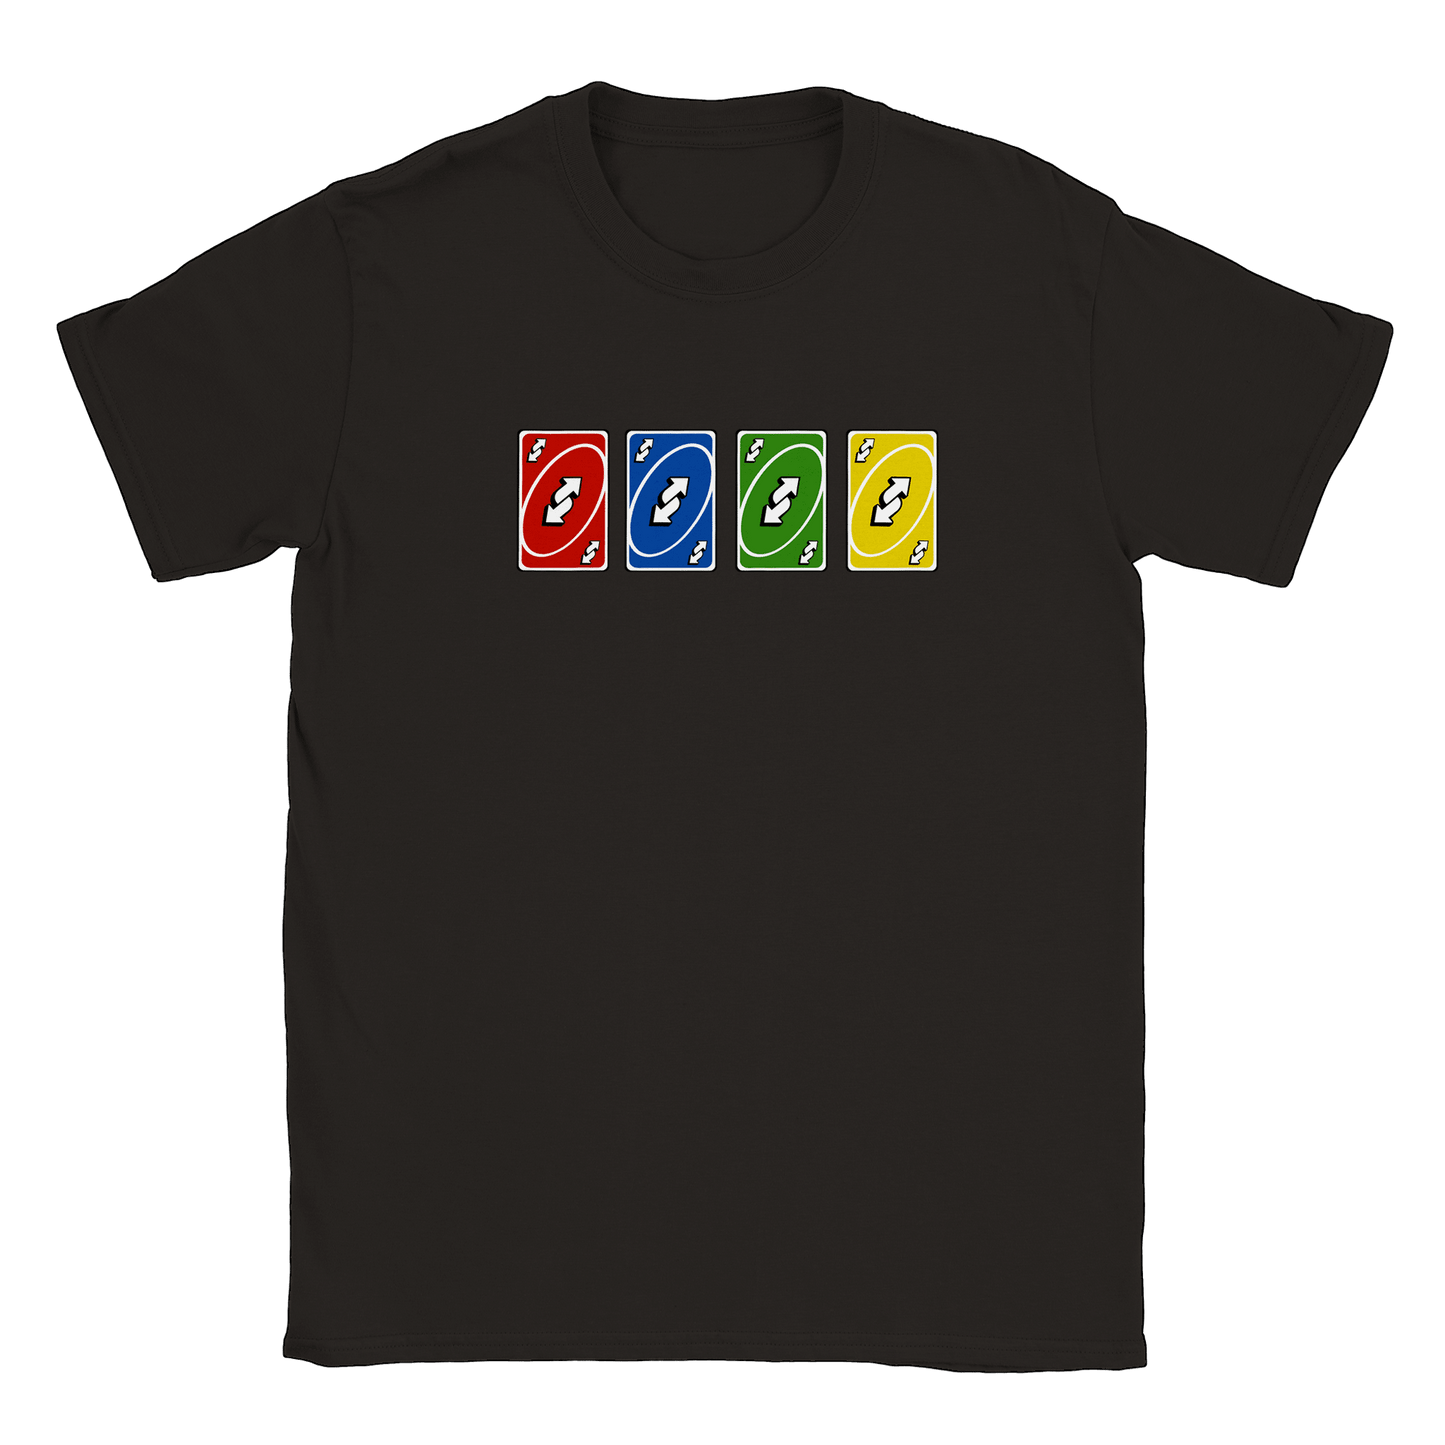 Vändkort alla färger - T-shirt Svart